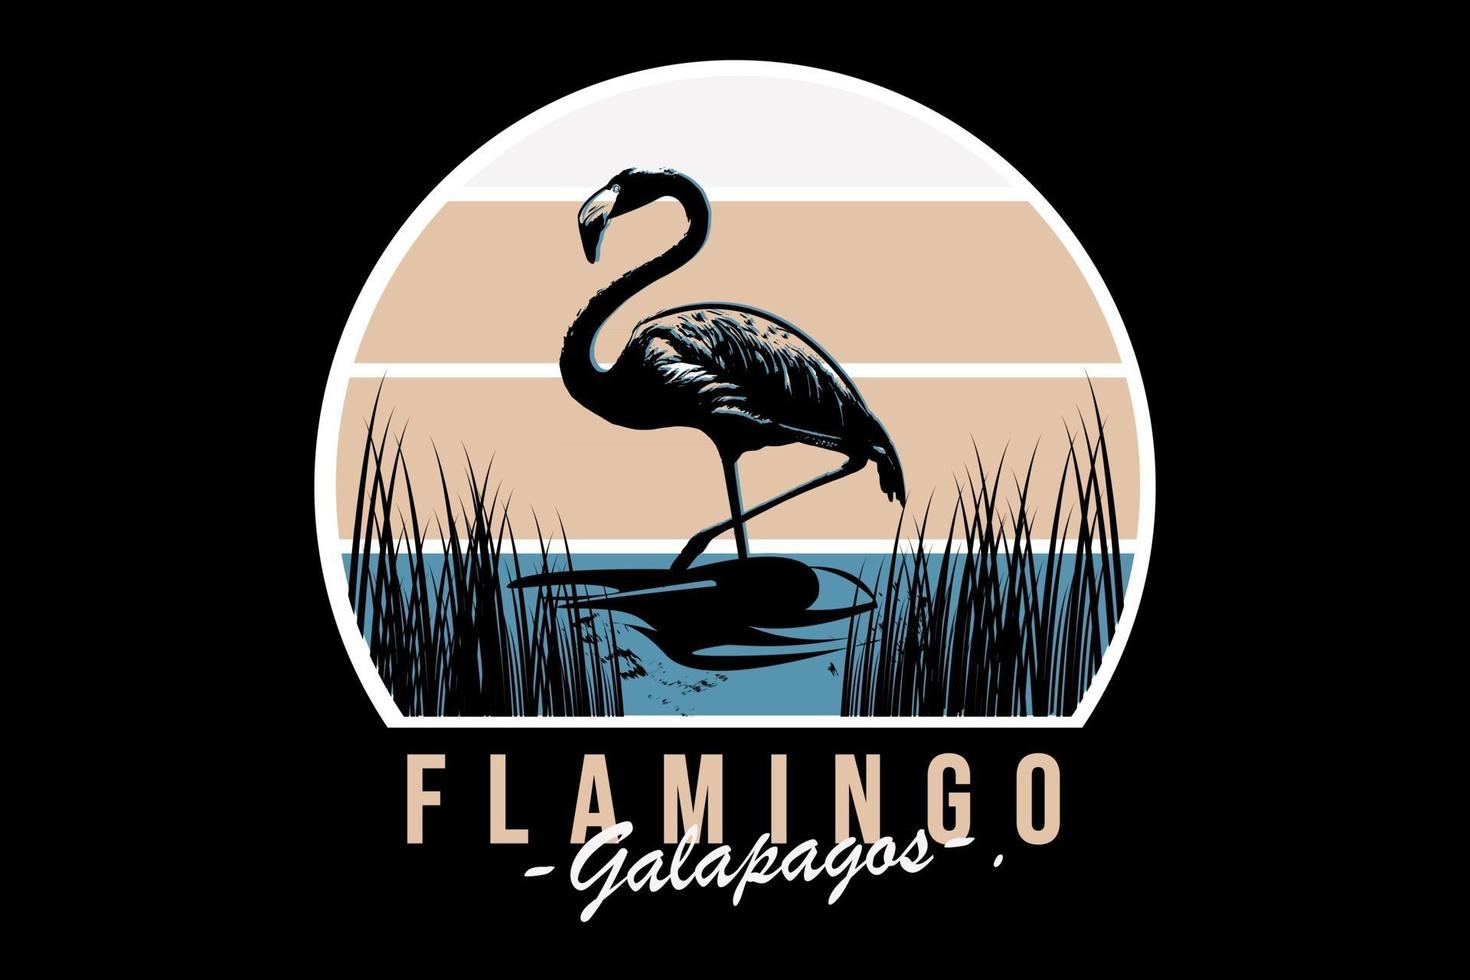 Flamingo Galapagos Farbe Blau und Weiß vektor